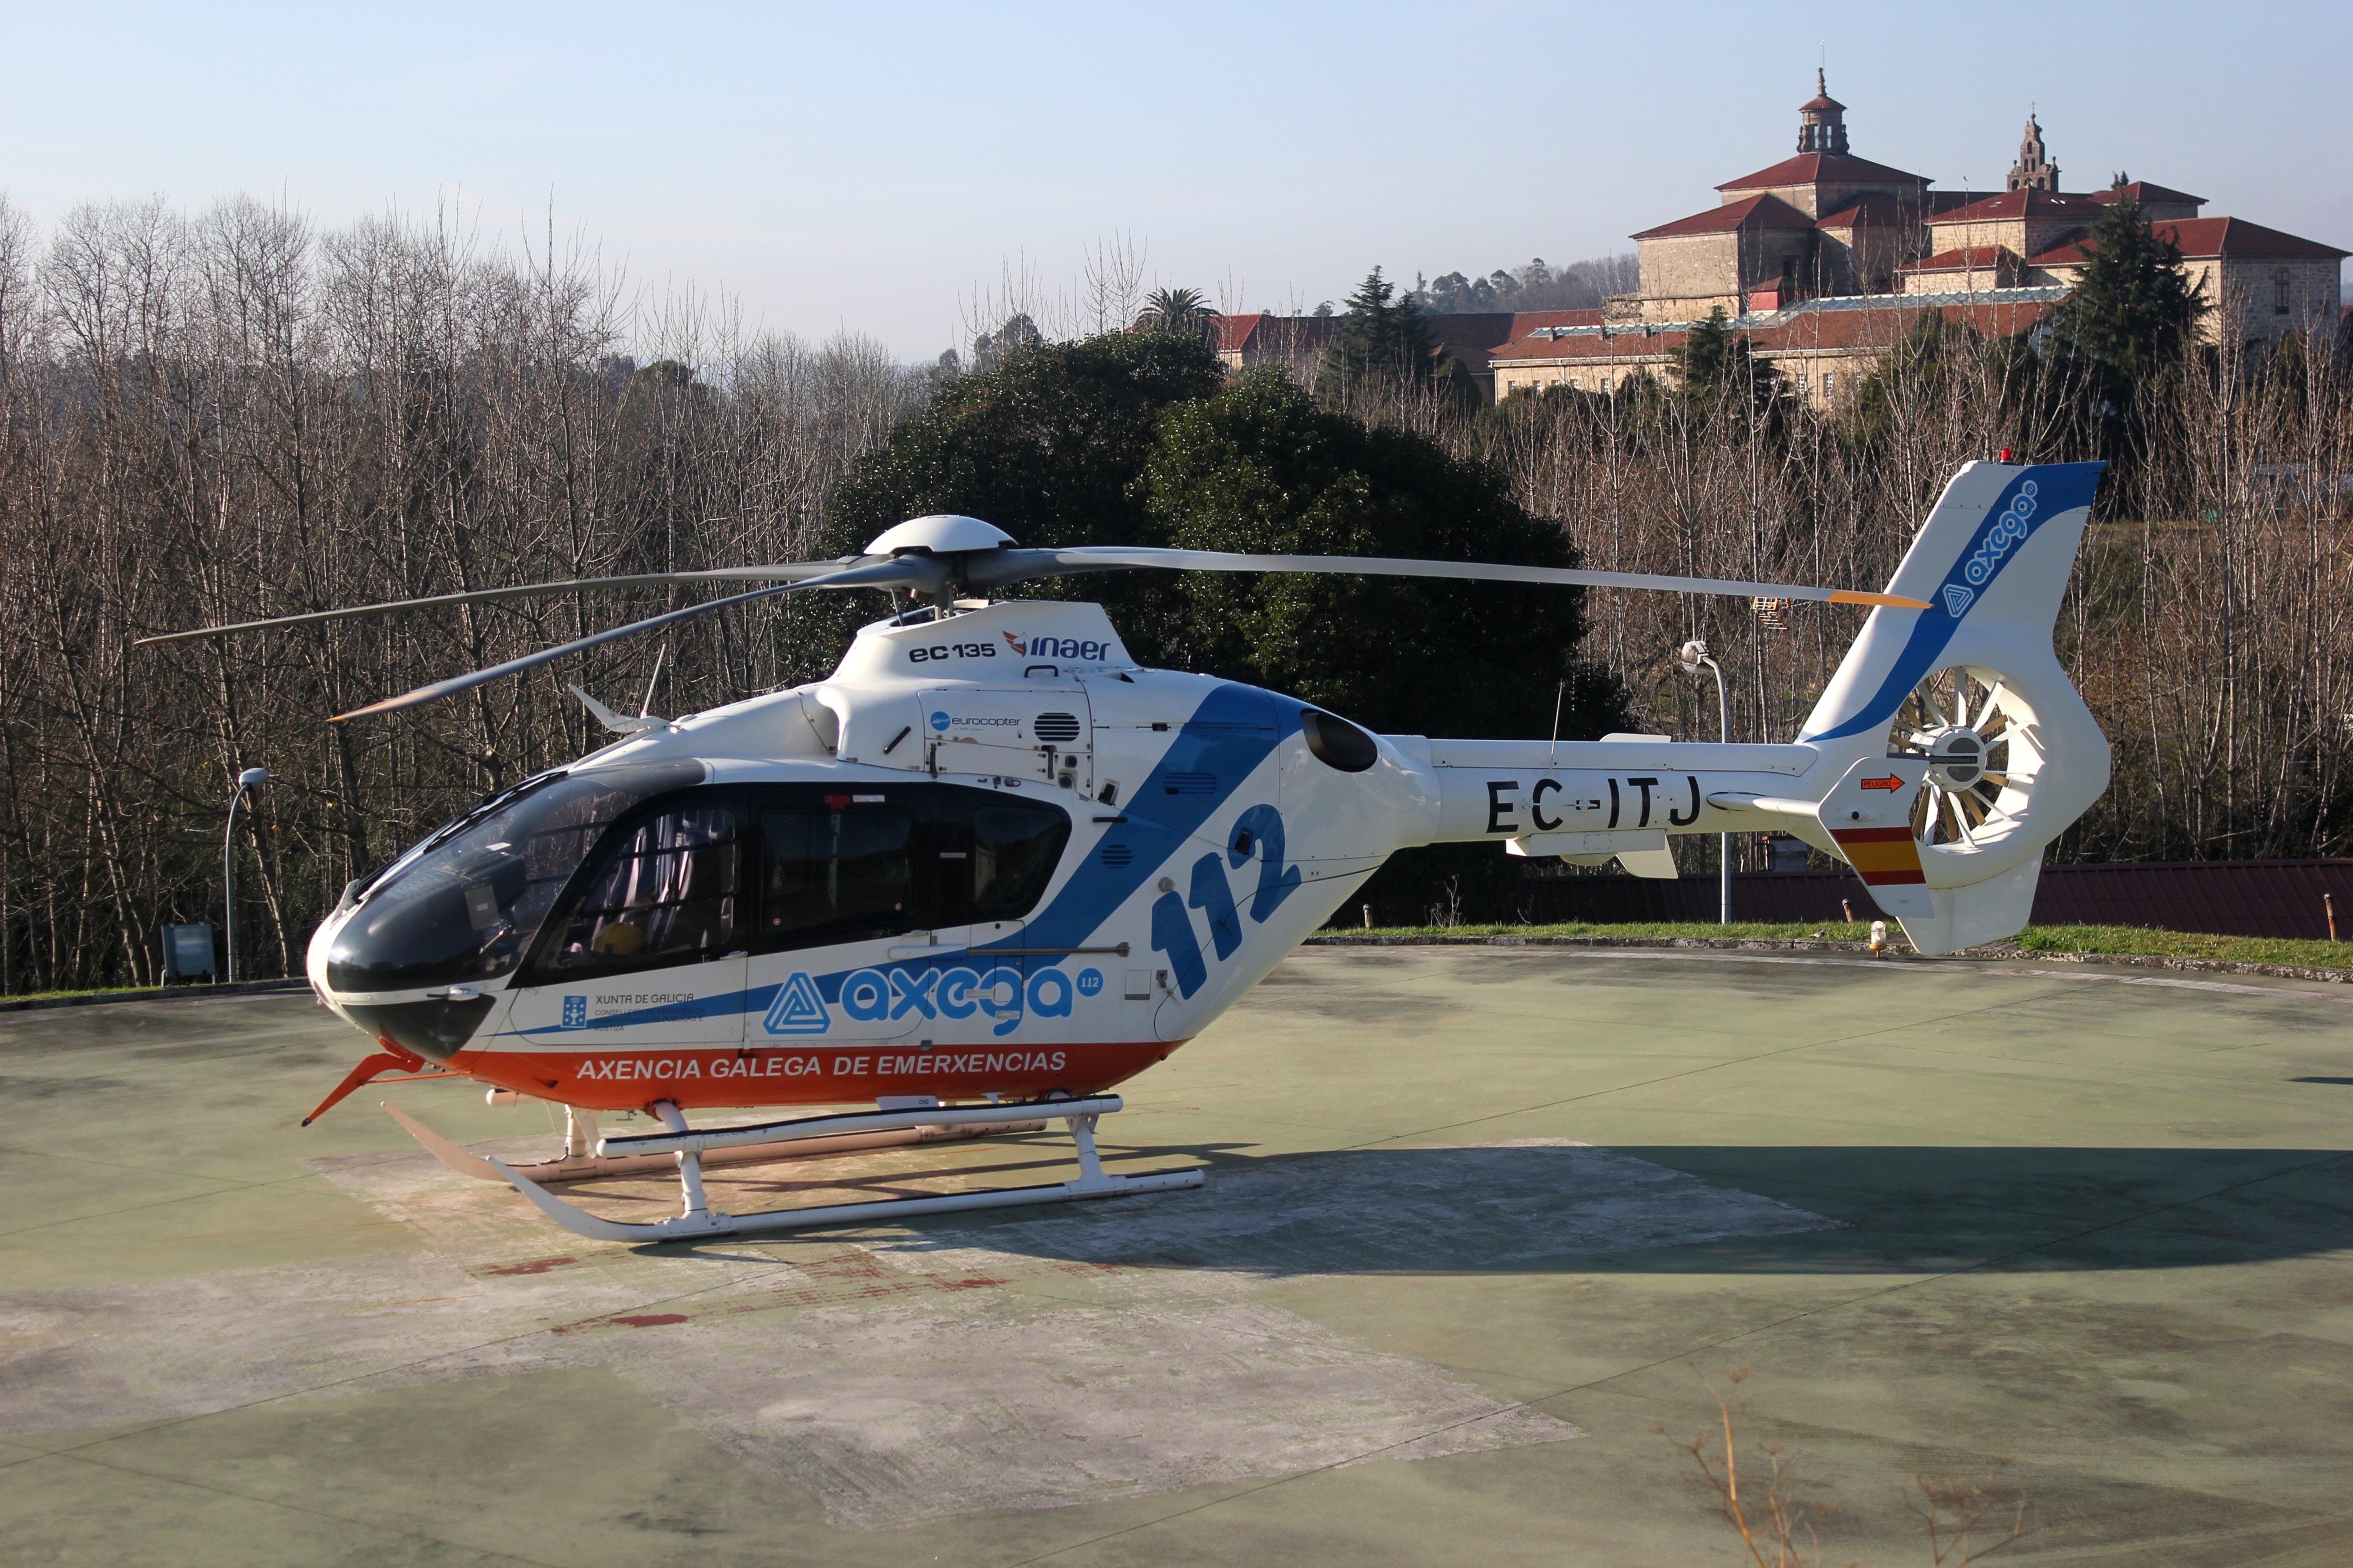 Eurocopter EC-135 EC-ITJ 01